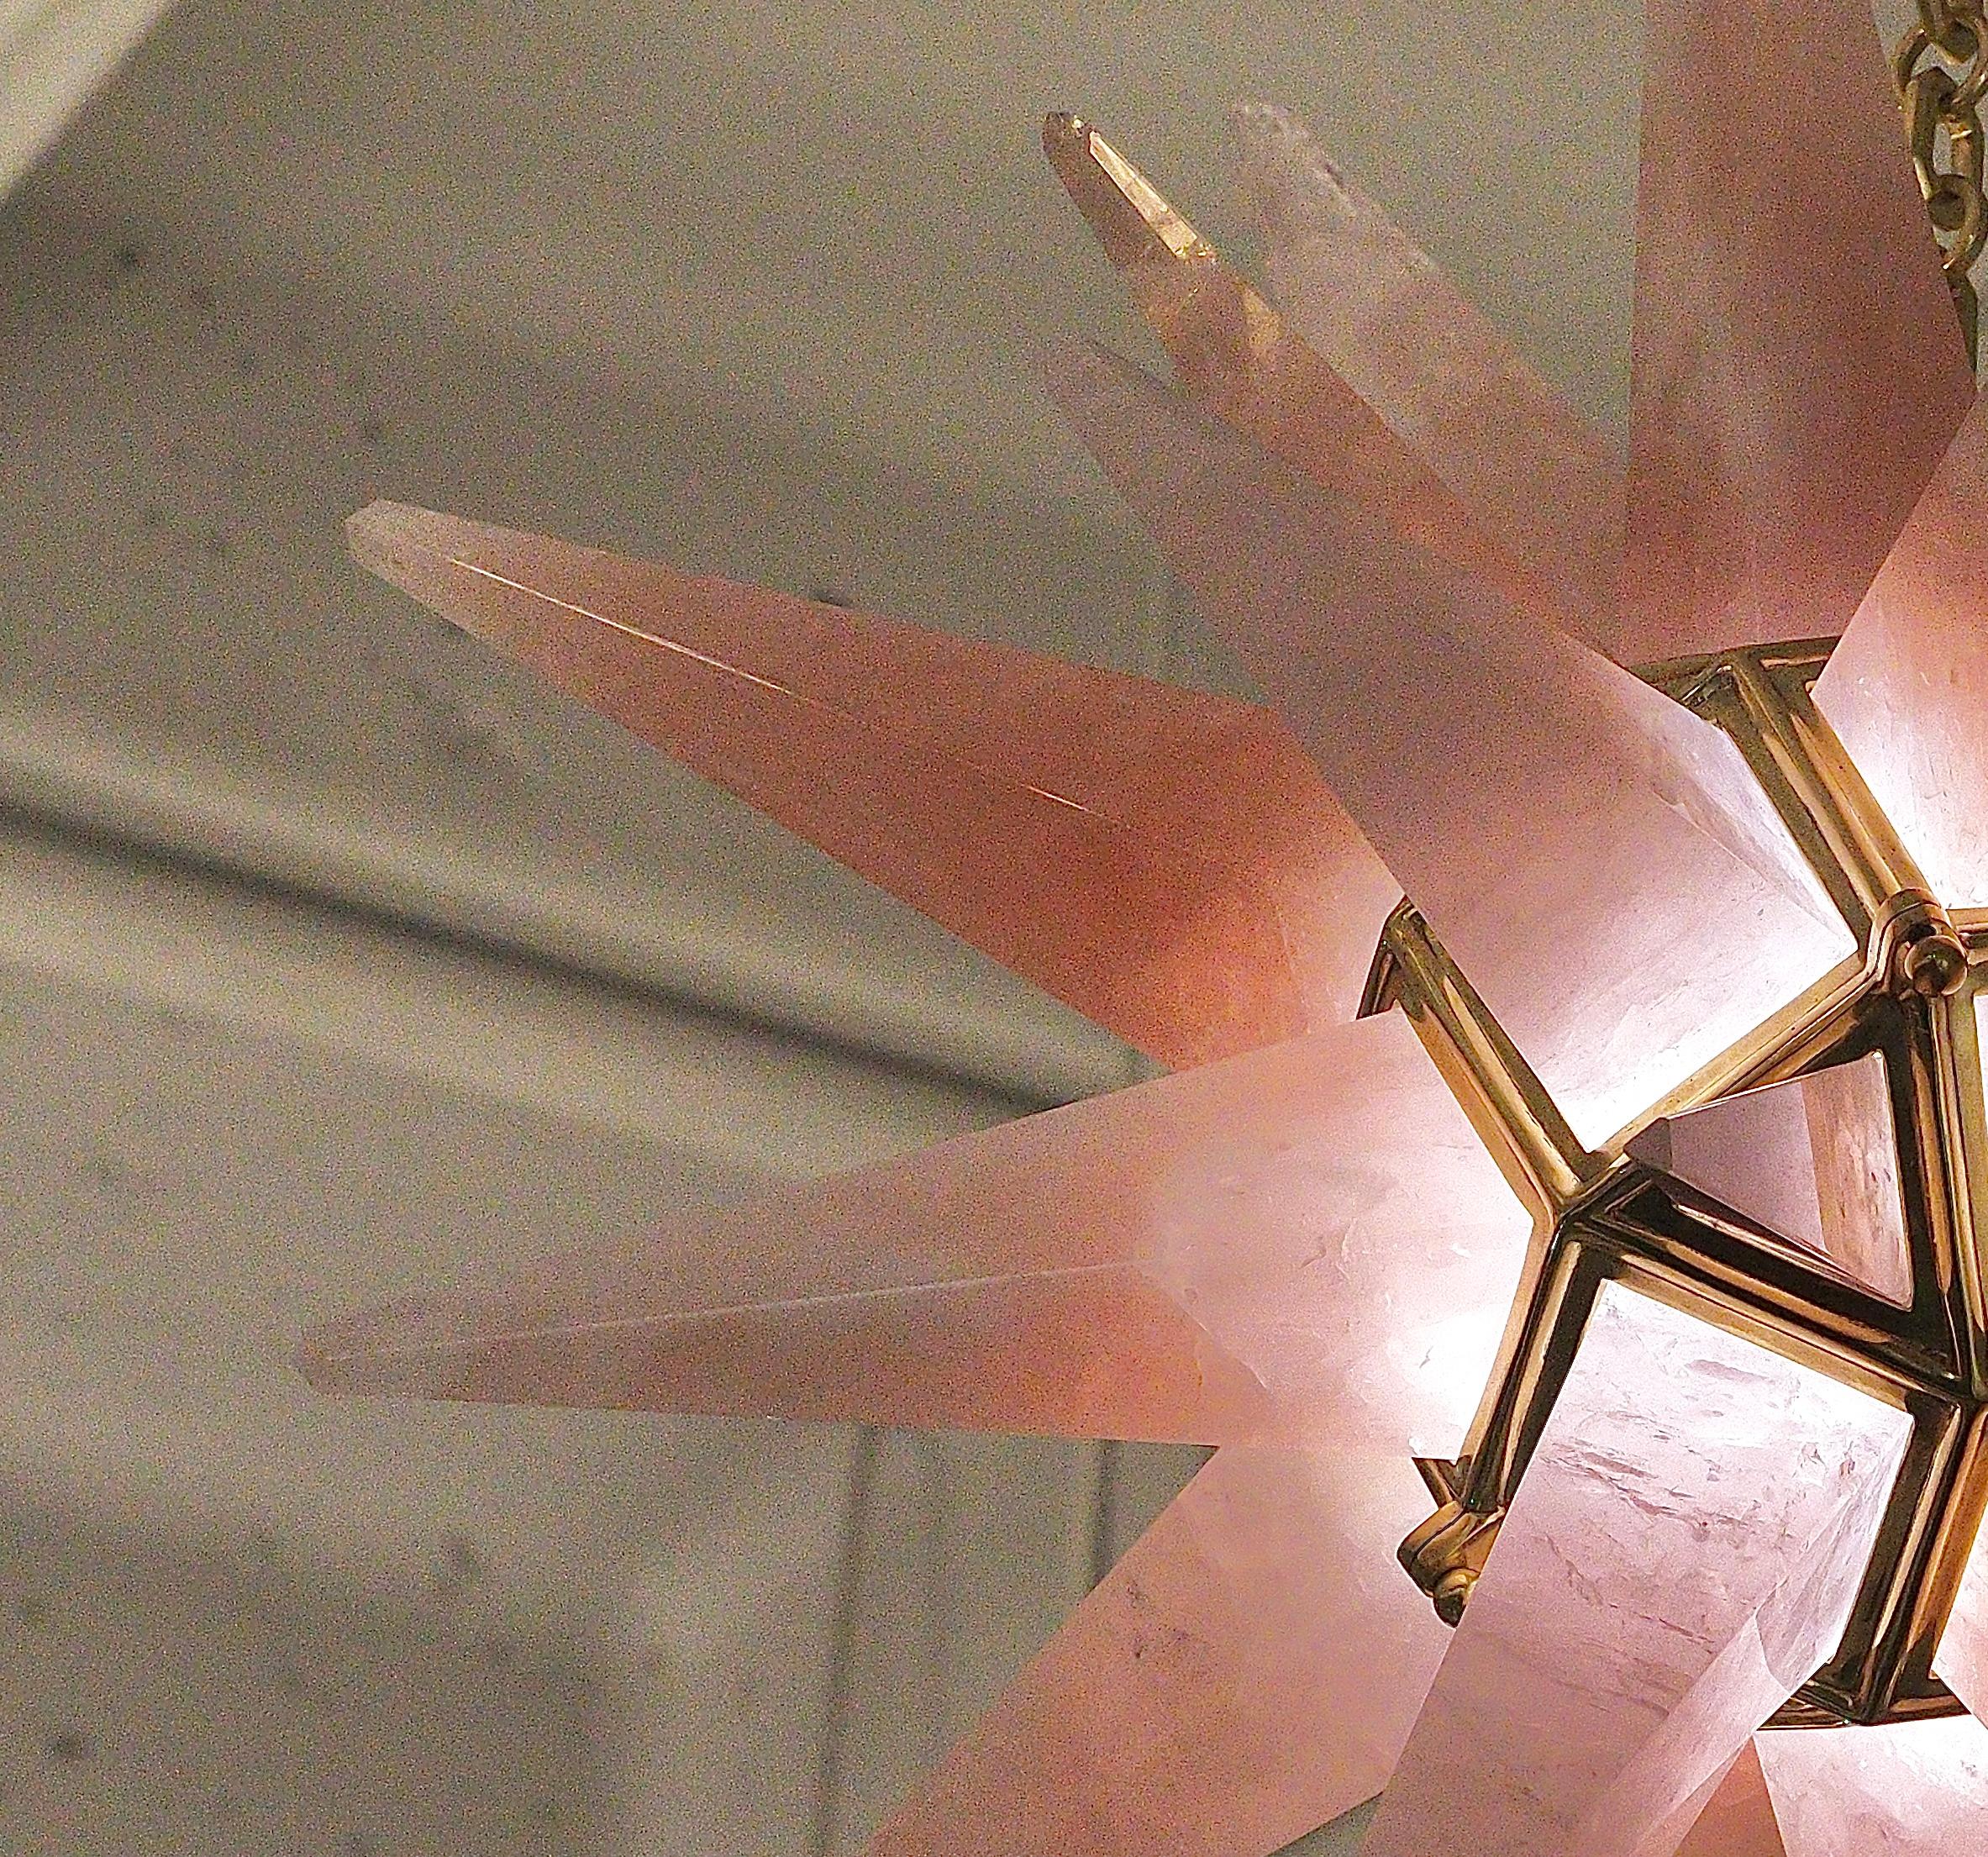 Rosa Bergkristall-Sternleuchter mit poliertem Messingrahmen, entworfen von Phoenix Gallery, NYC.
Zwei Candlelabra-Steckdosen installiert. Verwenden Sie zwei 75-Watt-LED-Kandelaber-Glühbirnen.

Glühbirne mitgeliefert.

Kundenspezifische Größe und